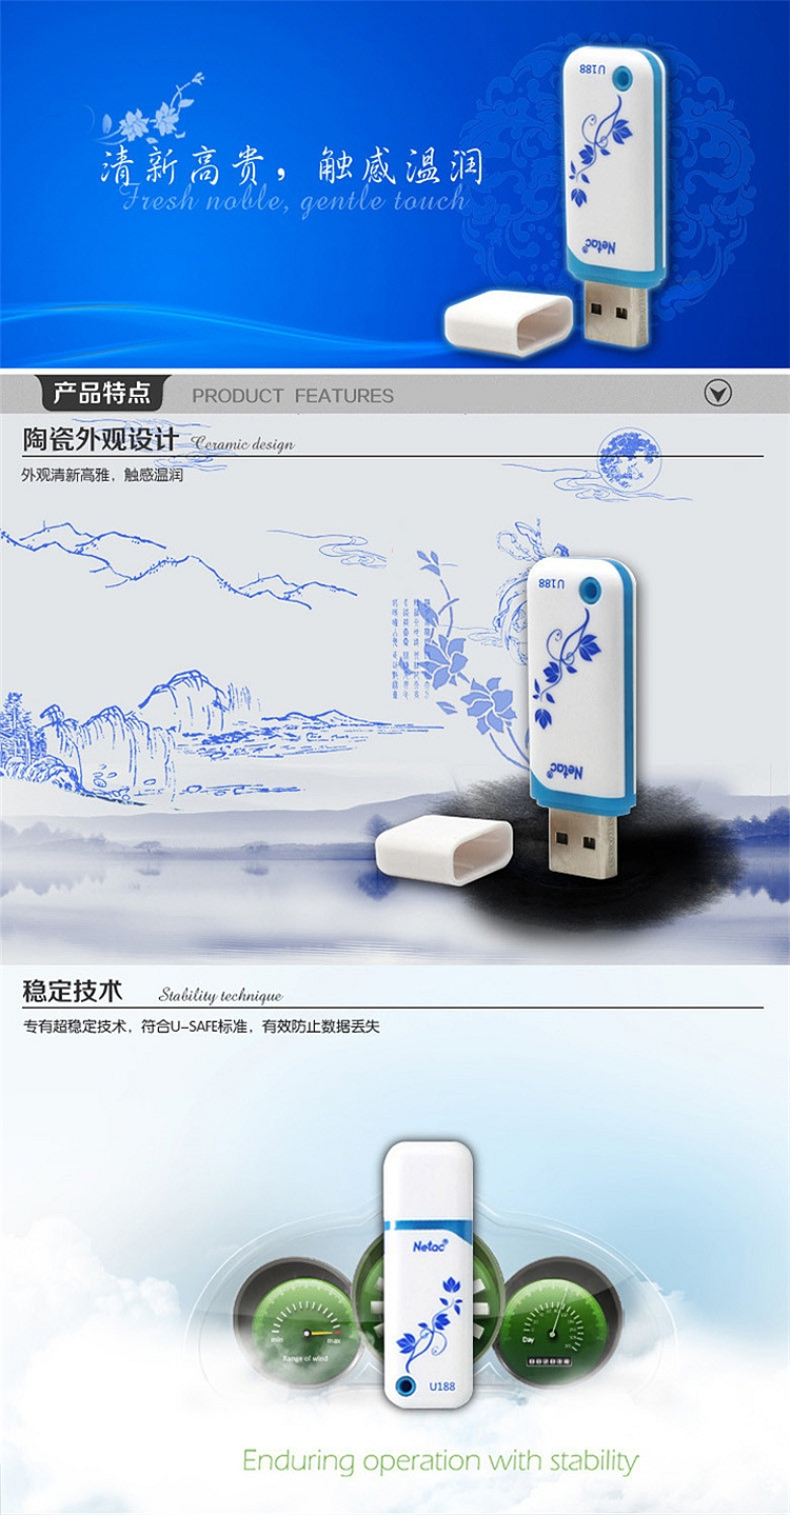 朗科 Netac U盘 U188 16GB (白色) USB2.0